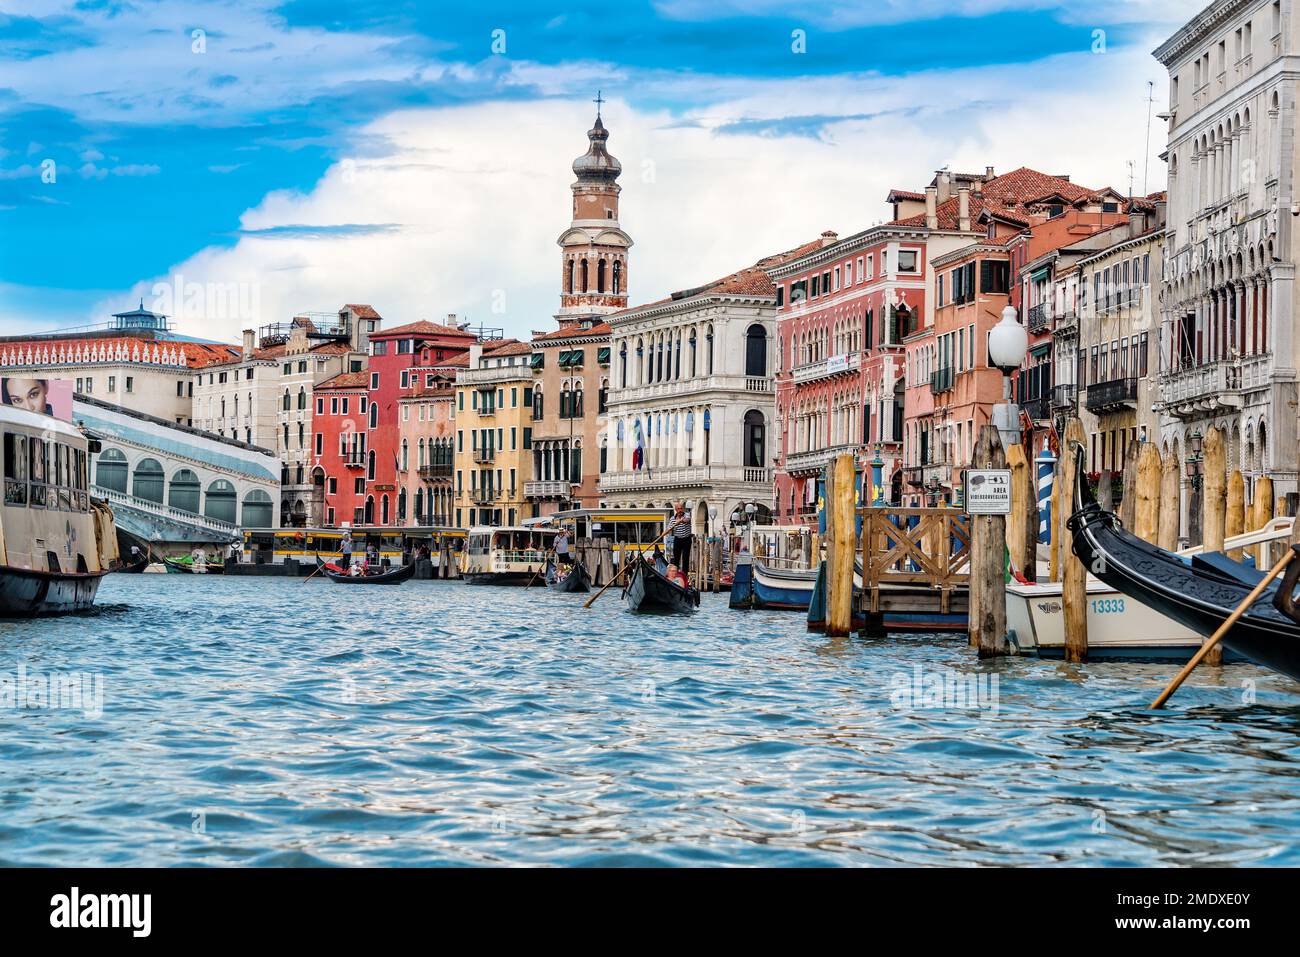 Venedig, Italien - 13. Juni 2016: Der Canale Grande ist einer der wichtigsten Wasserkanäle, die von Wassertaxis und Gondeln genutzt werden. Stockfoto